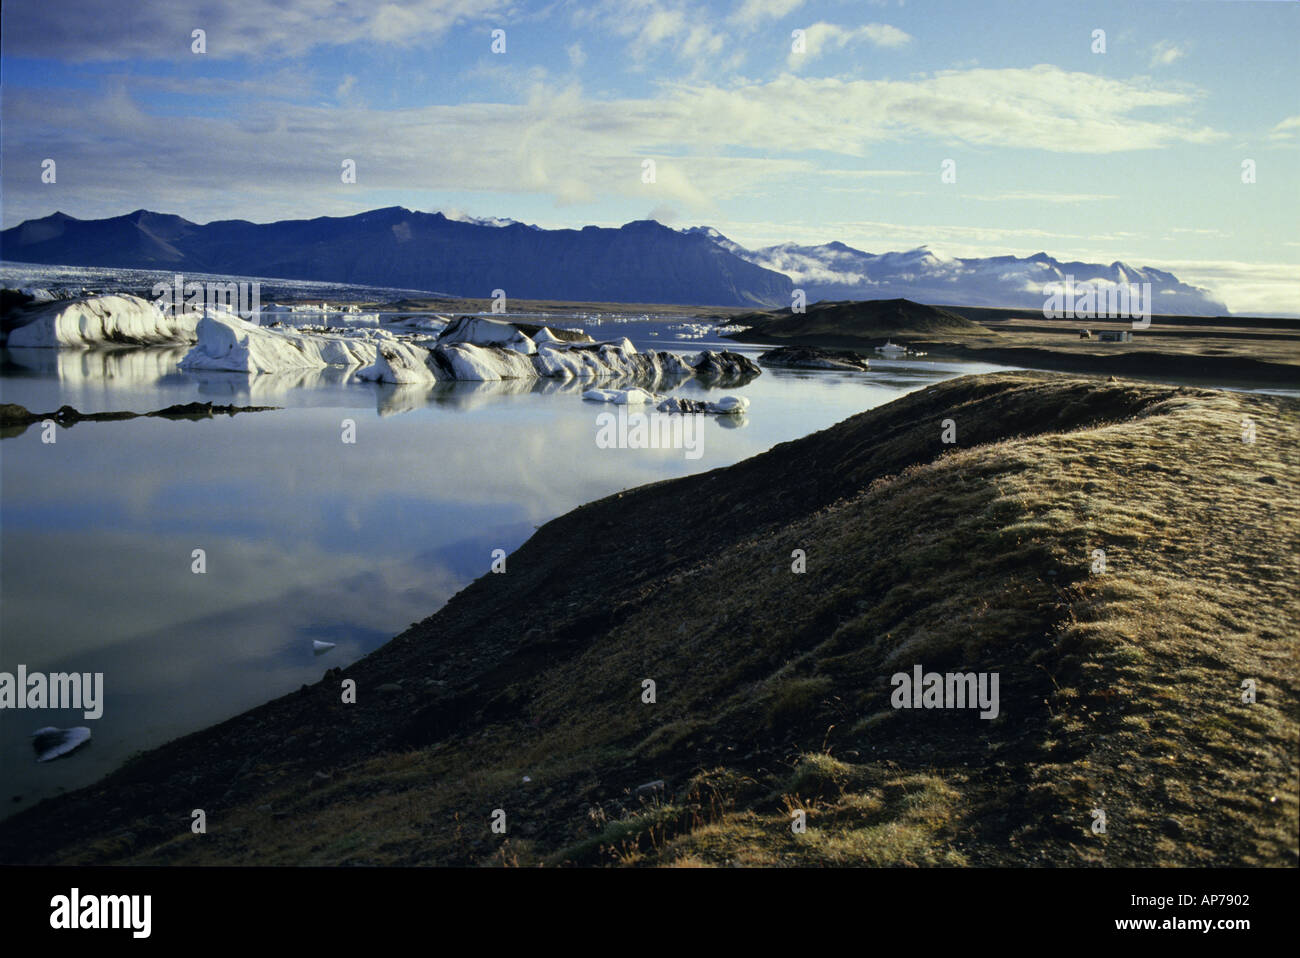 Iceland jokulsarlon lagoon icebergs Stock Photo